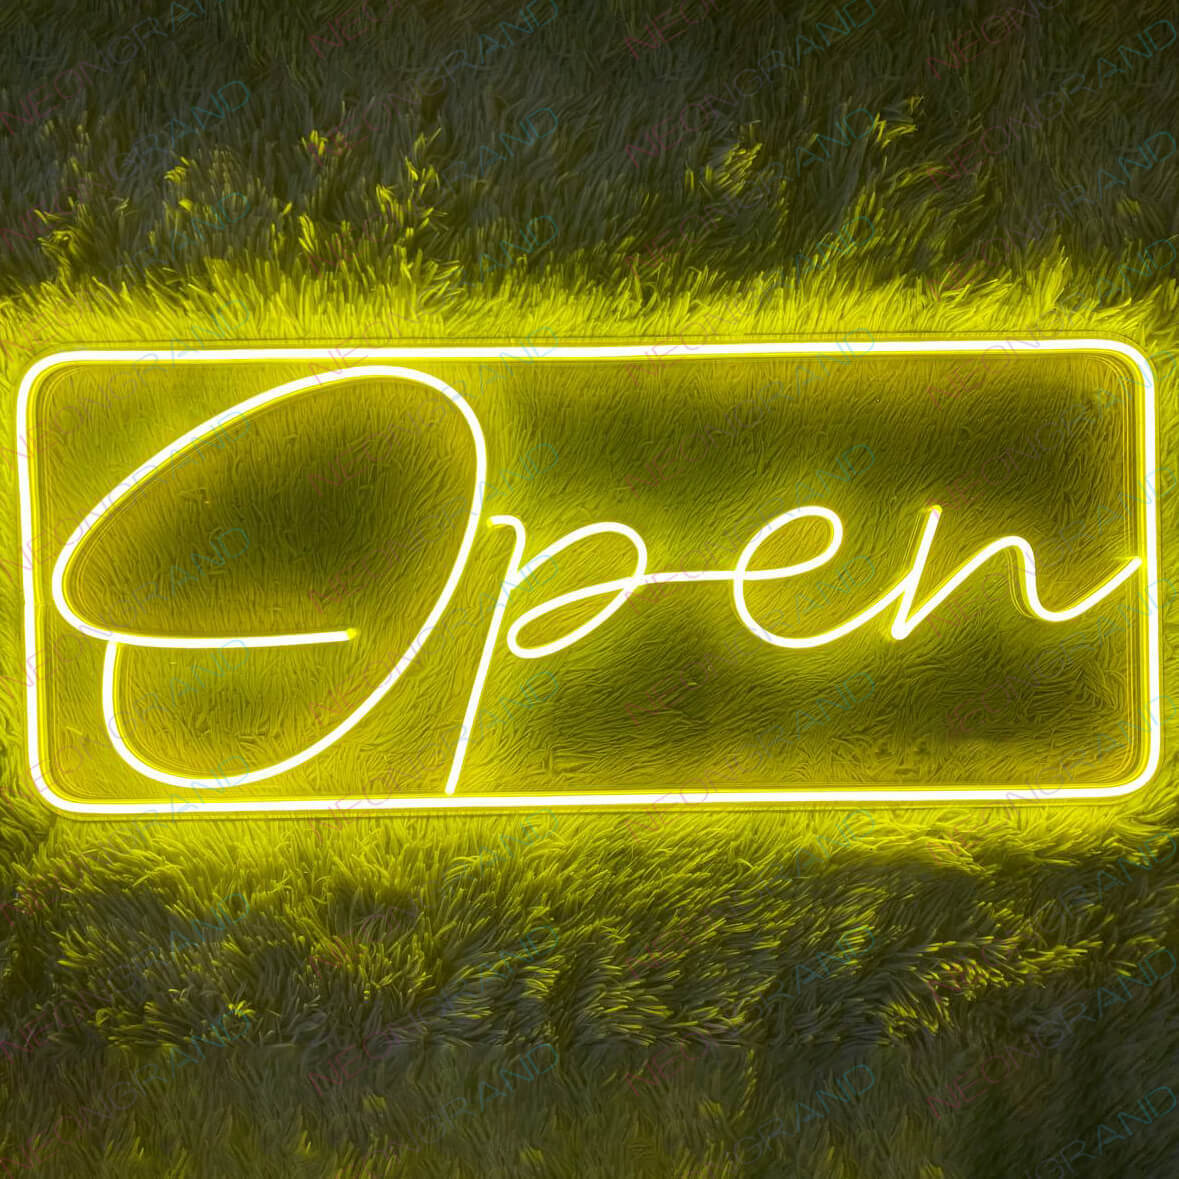 Open Neon Signs Outdoor Waterproof Led Light yellow wm